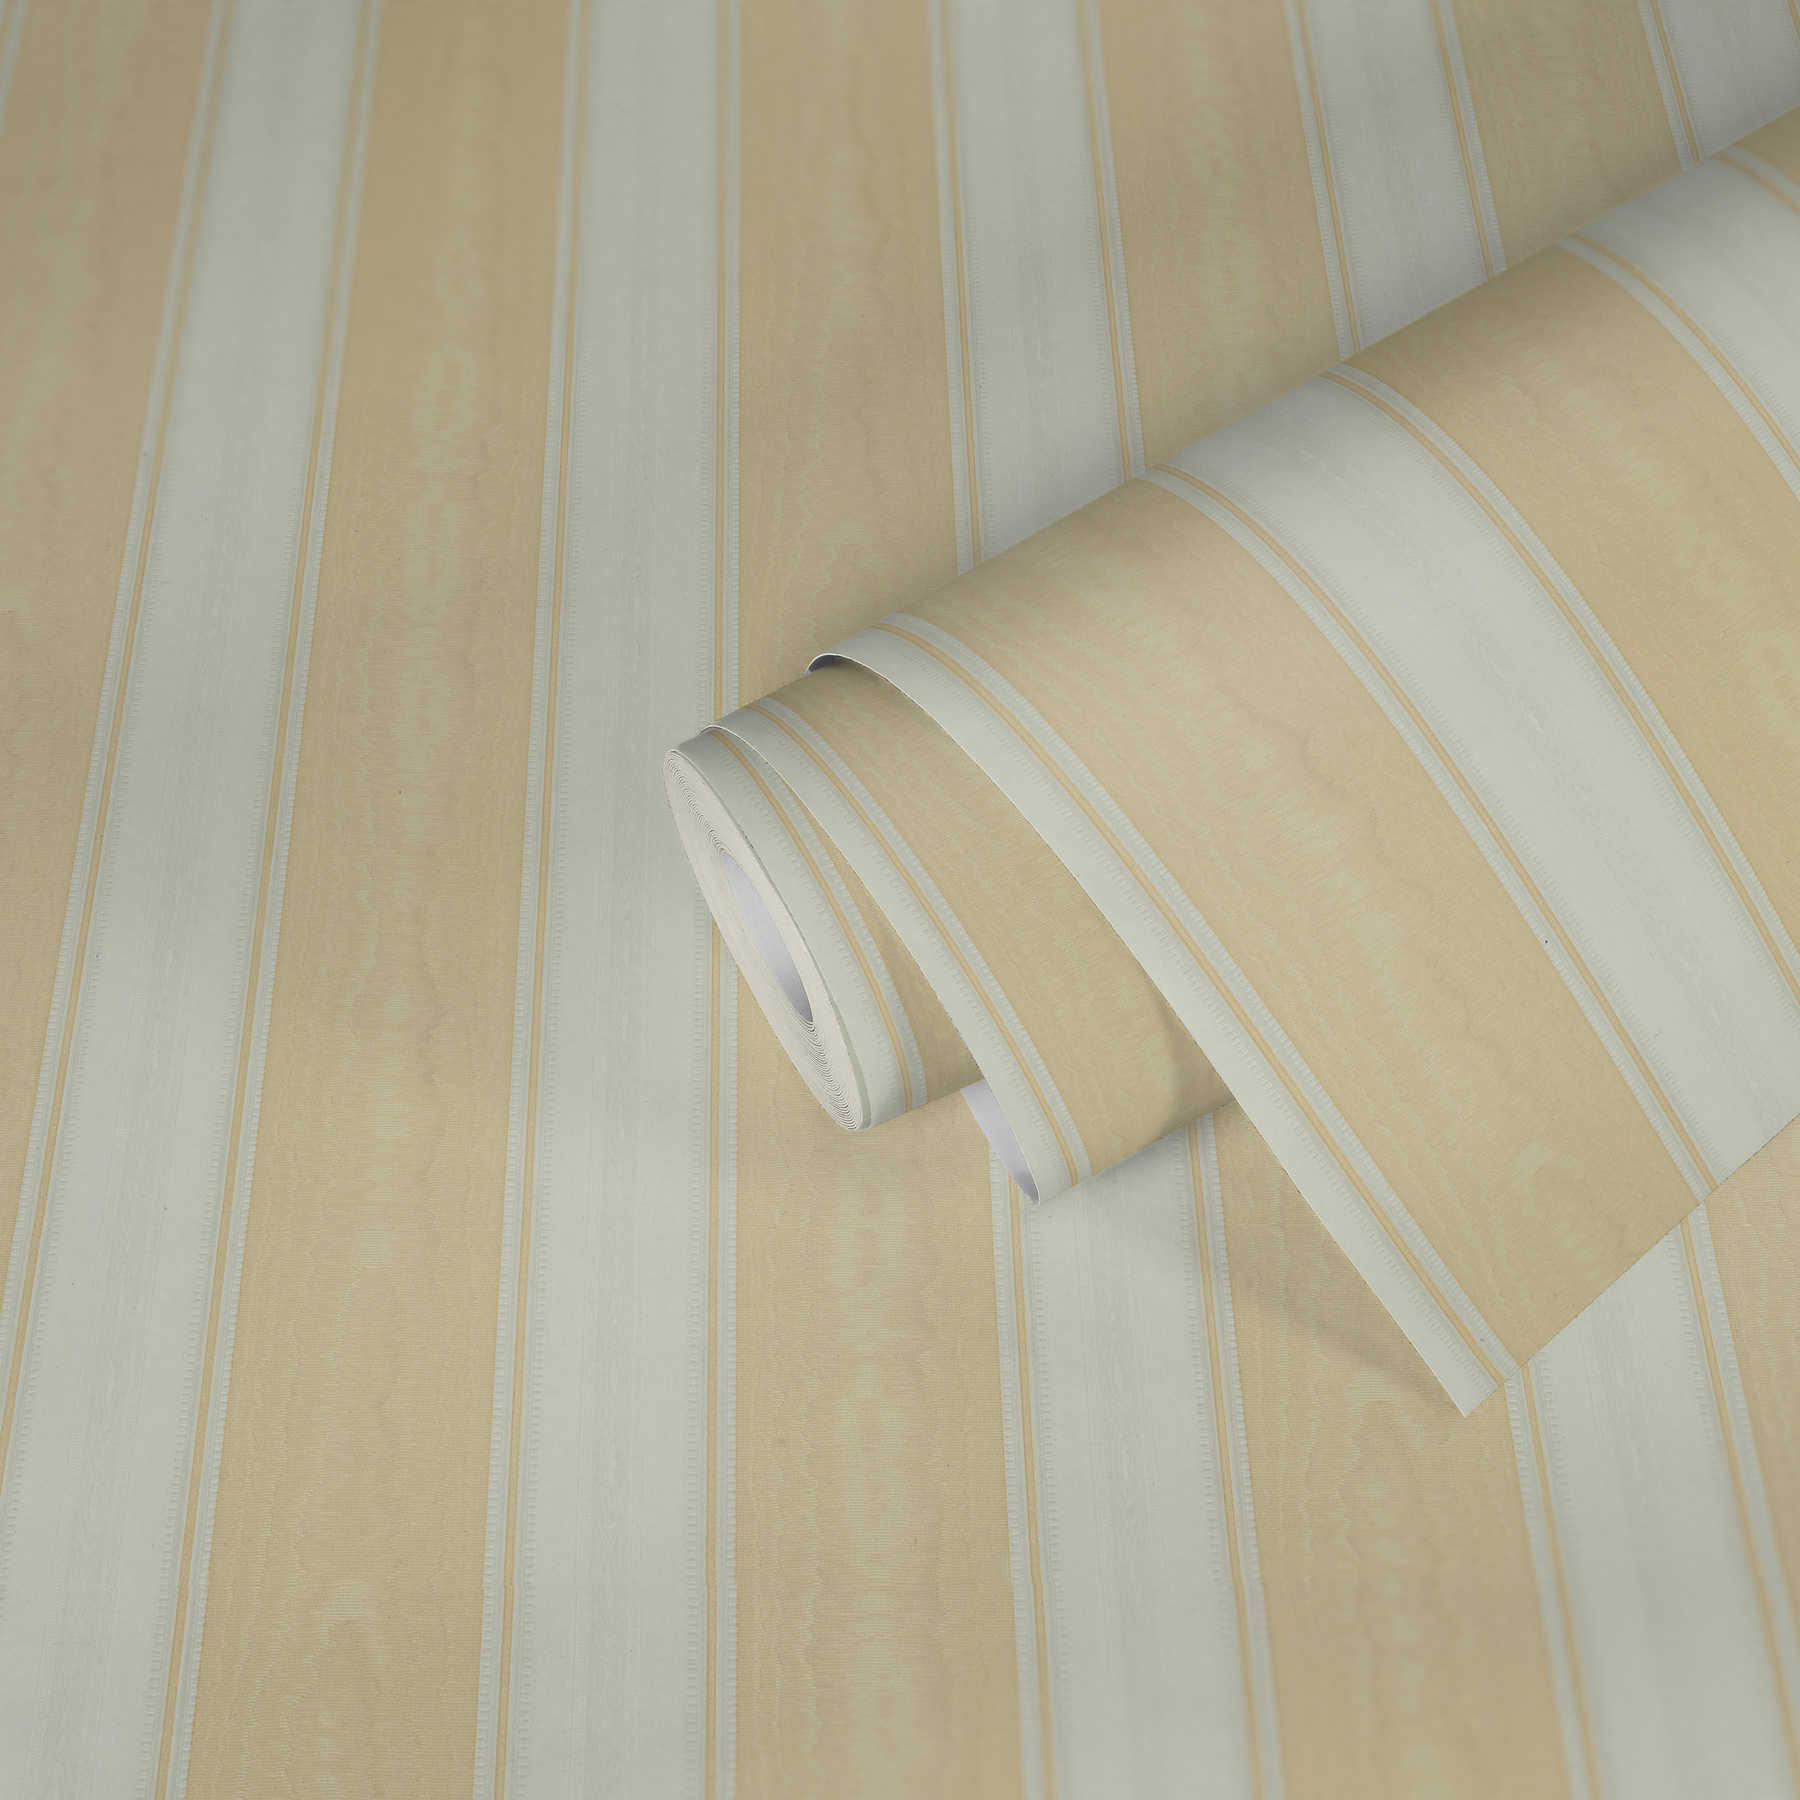             Gestreept behang met zijde moiré effect - beige, wit
        